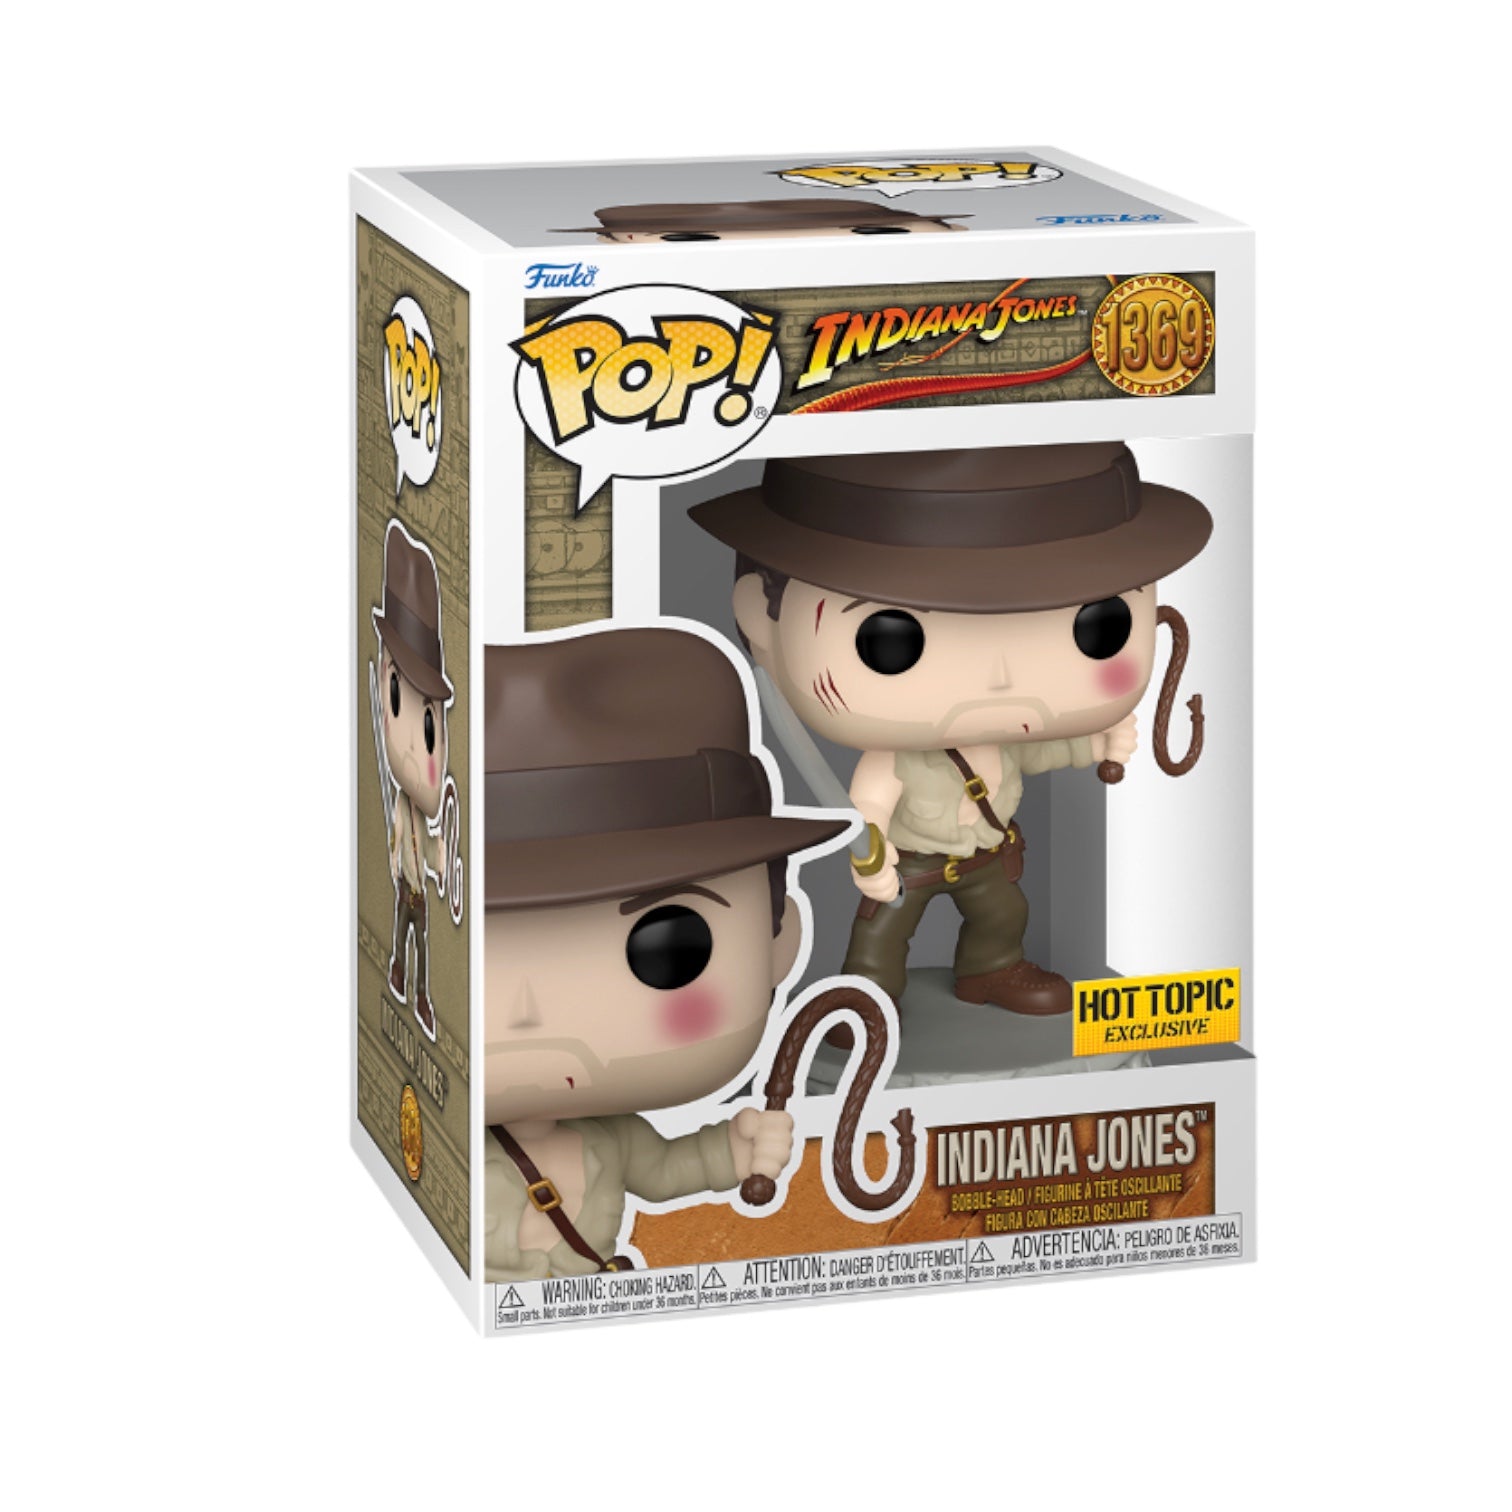 Indiana Jones #1369 (w/ Sword and Whip) Funko Pop! - Indiana Jones - Hot Topic Exclusive